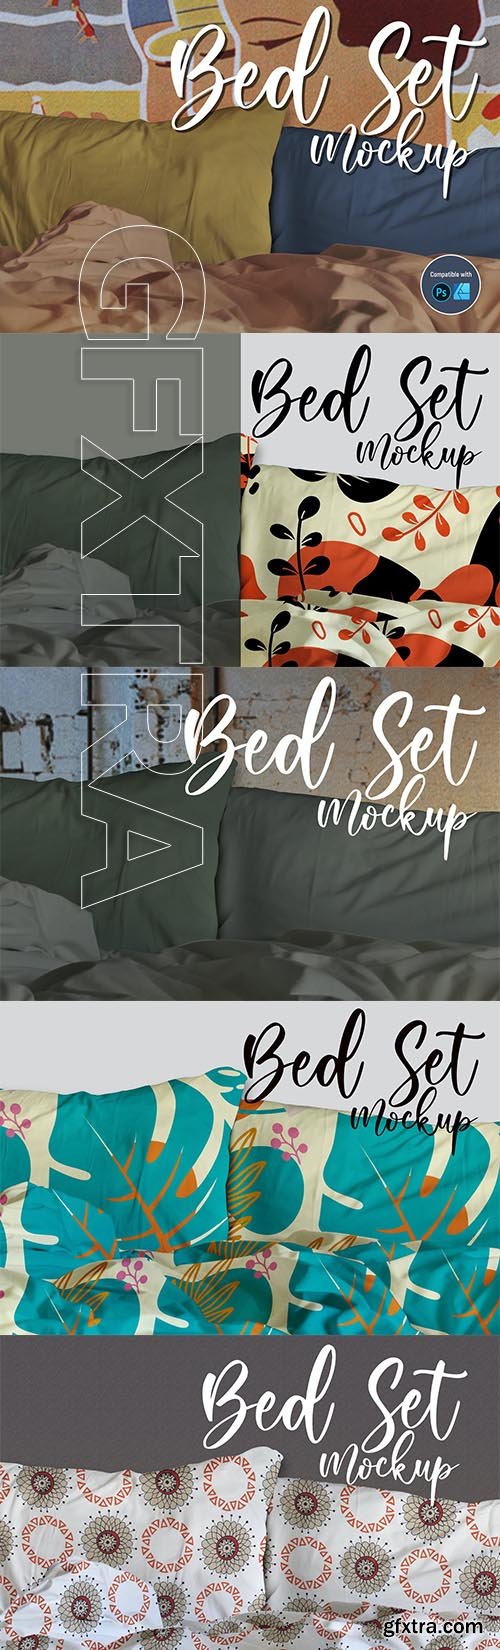 Bed set Mockup